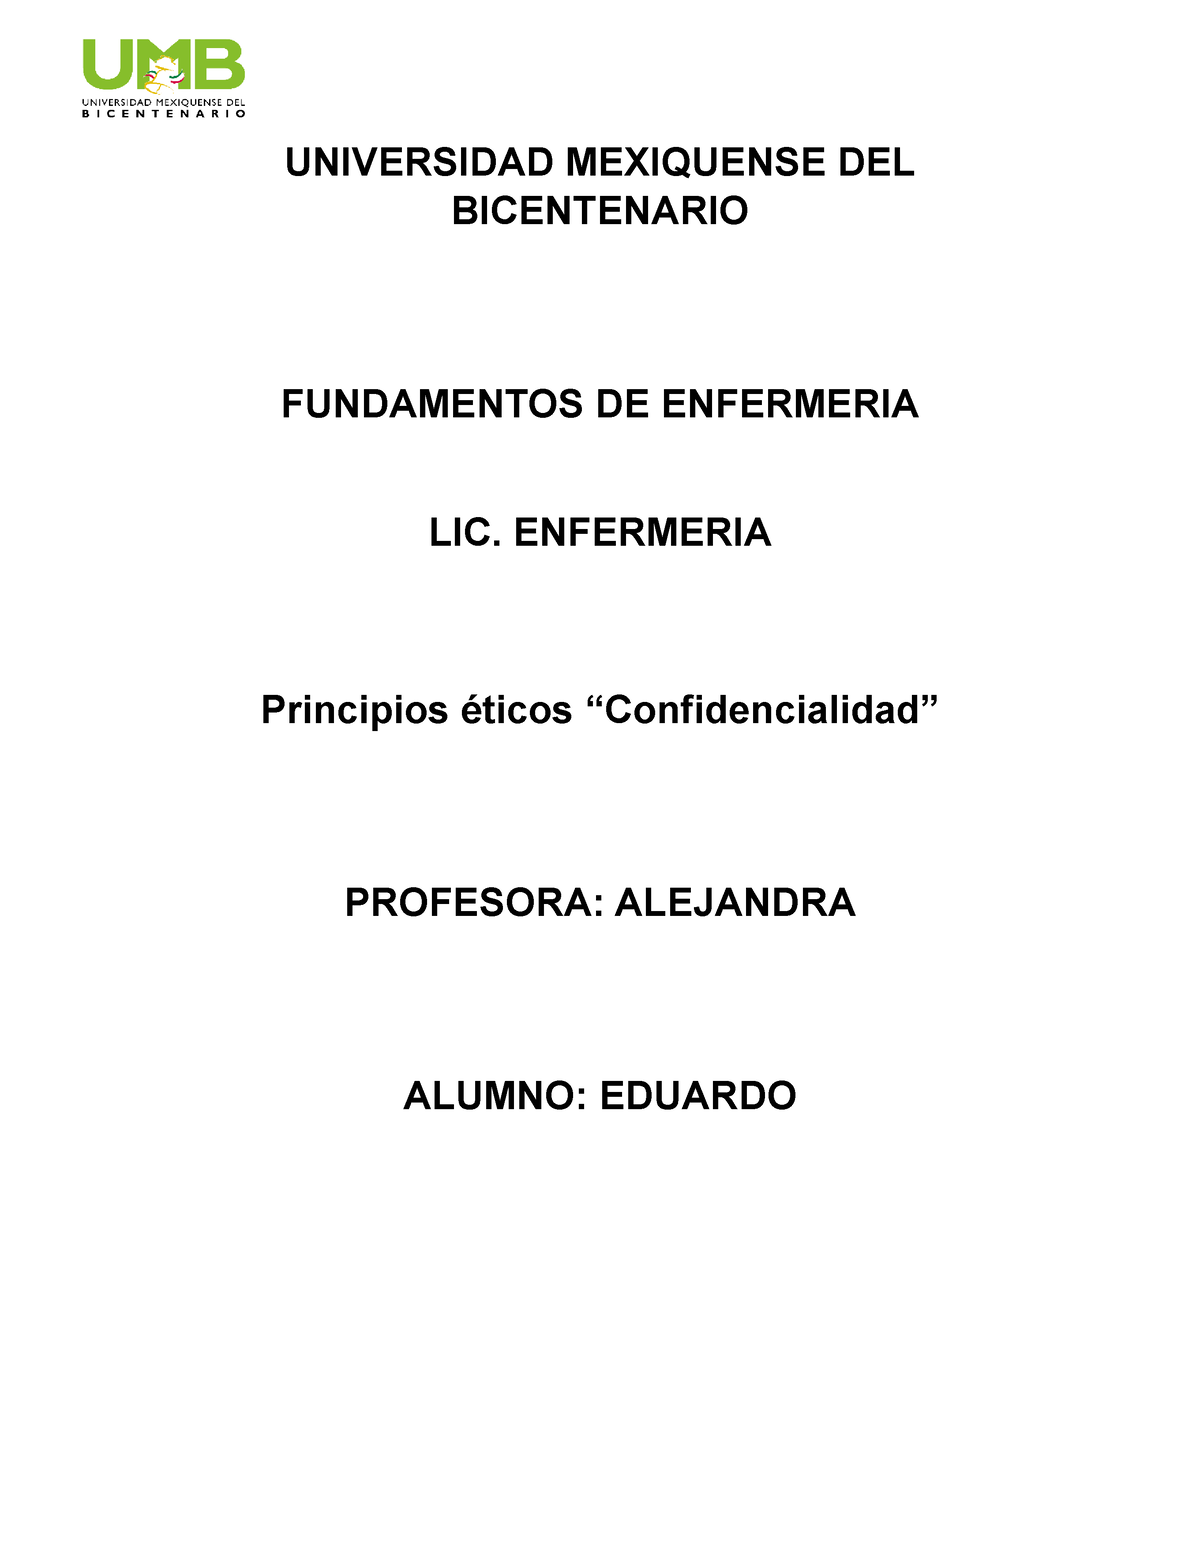 Principios éticos “confidencialidad” Fundamentos De Enfermeria Universidad Mexiquense Del 7125